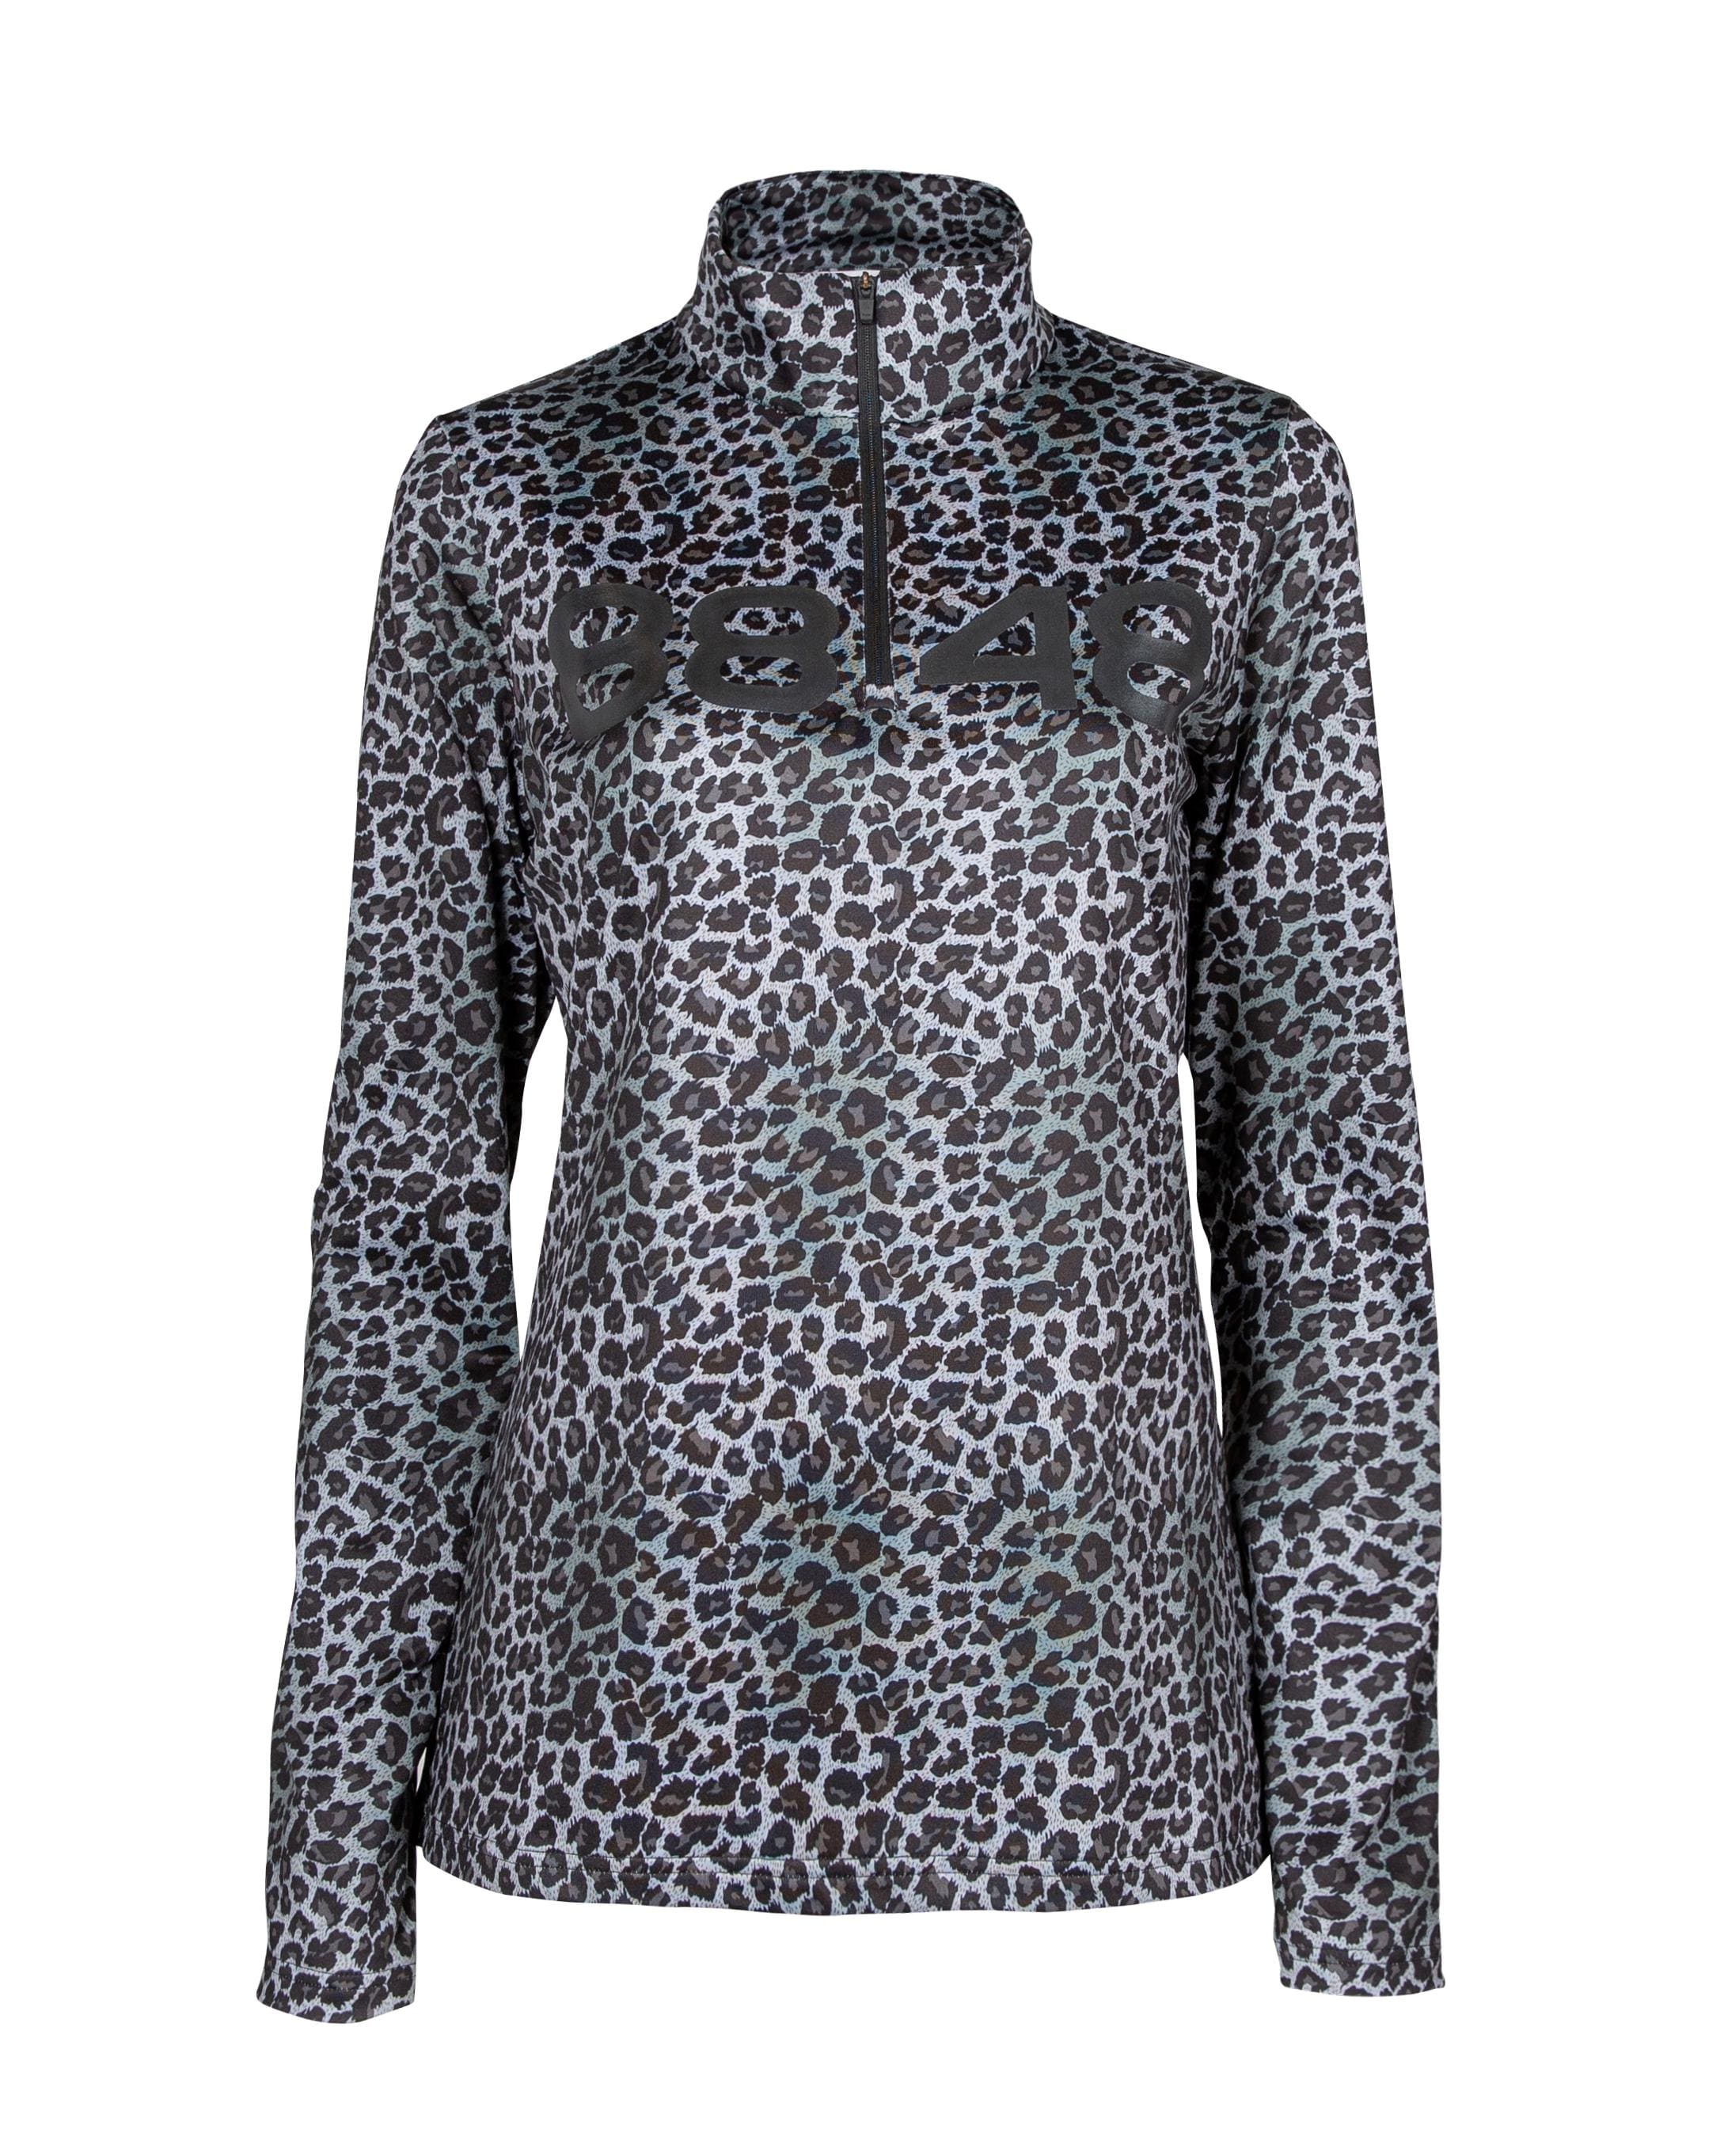 Fairlee W Sweat Leopard - Leopard technical sweater Women